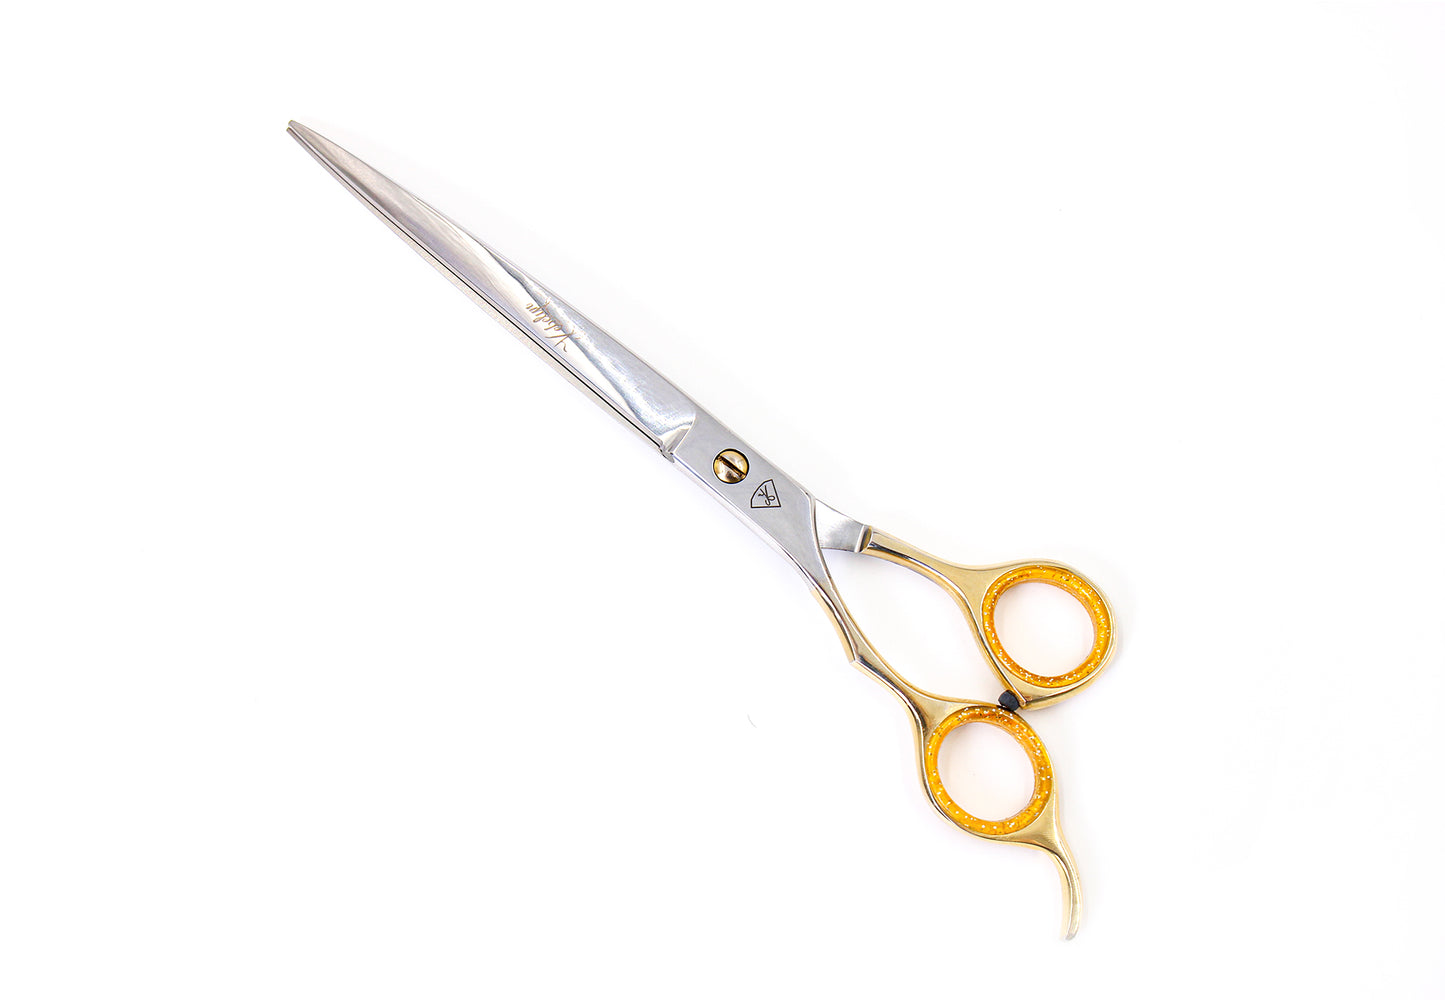 Straight left-handed scissor